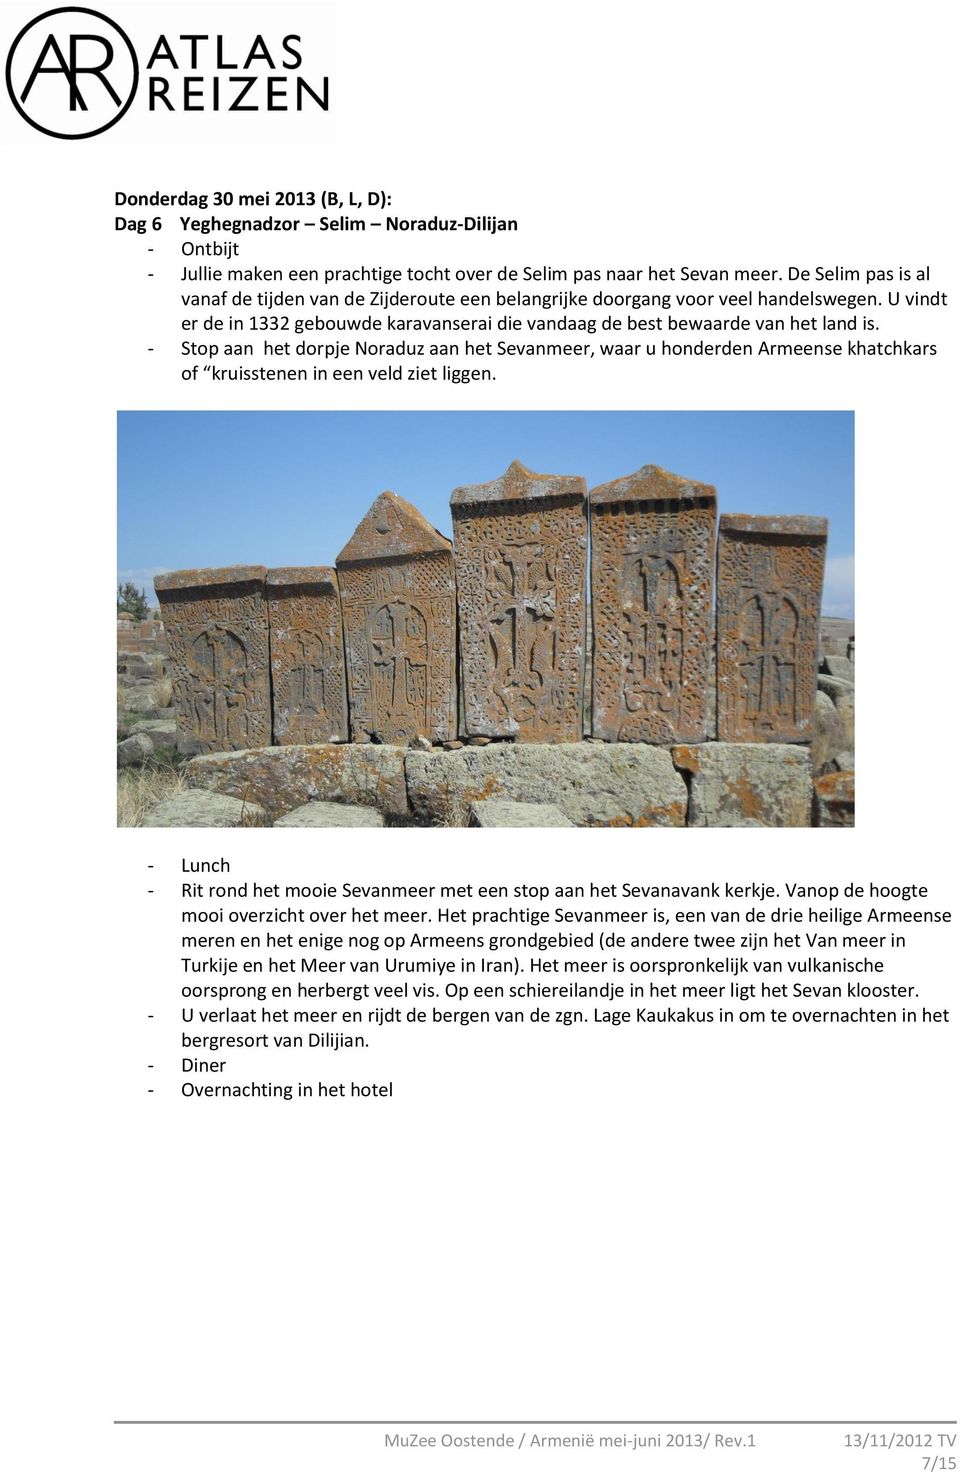 - Stop aan het dorpje Noraduz aan het Sevanmeer, waar u honderden Armeense khatchkars of kruisstenen in een veld ziet liggen.